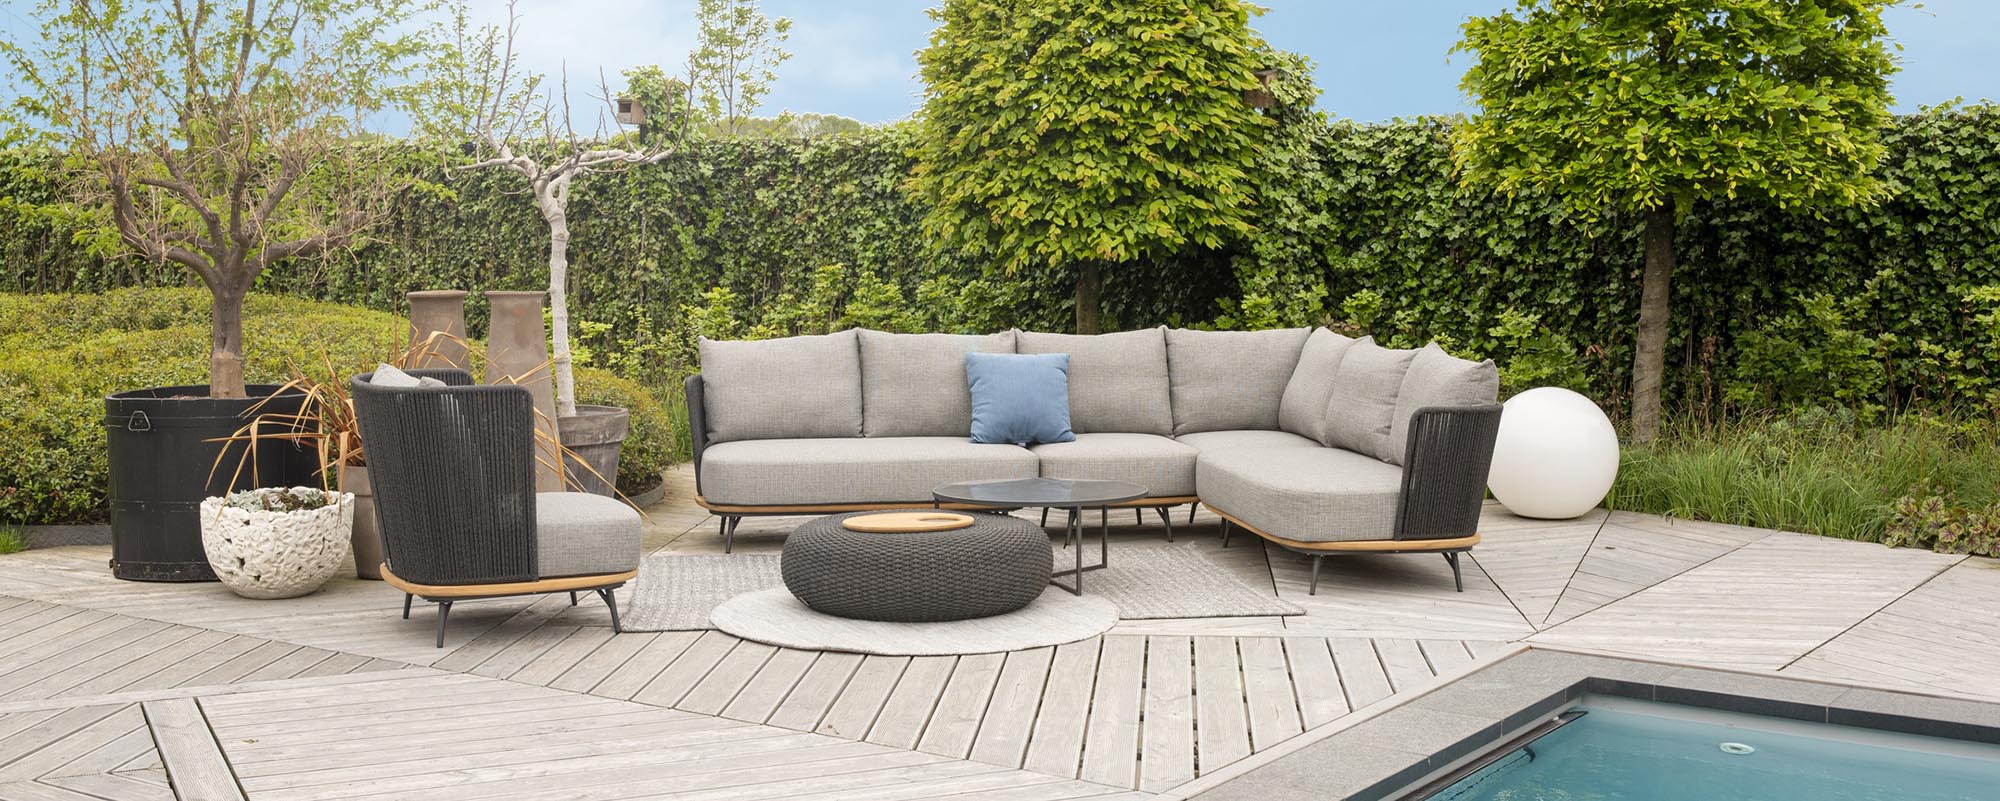 Positano Superschöne Sofa-Module Garten Lounge Gartenmöbel Lounge |